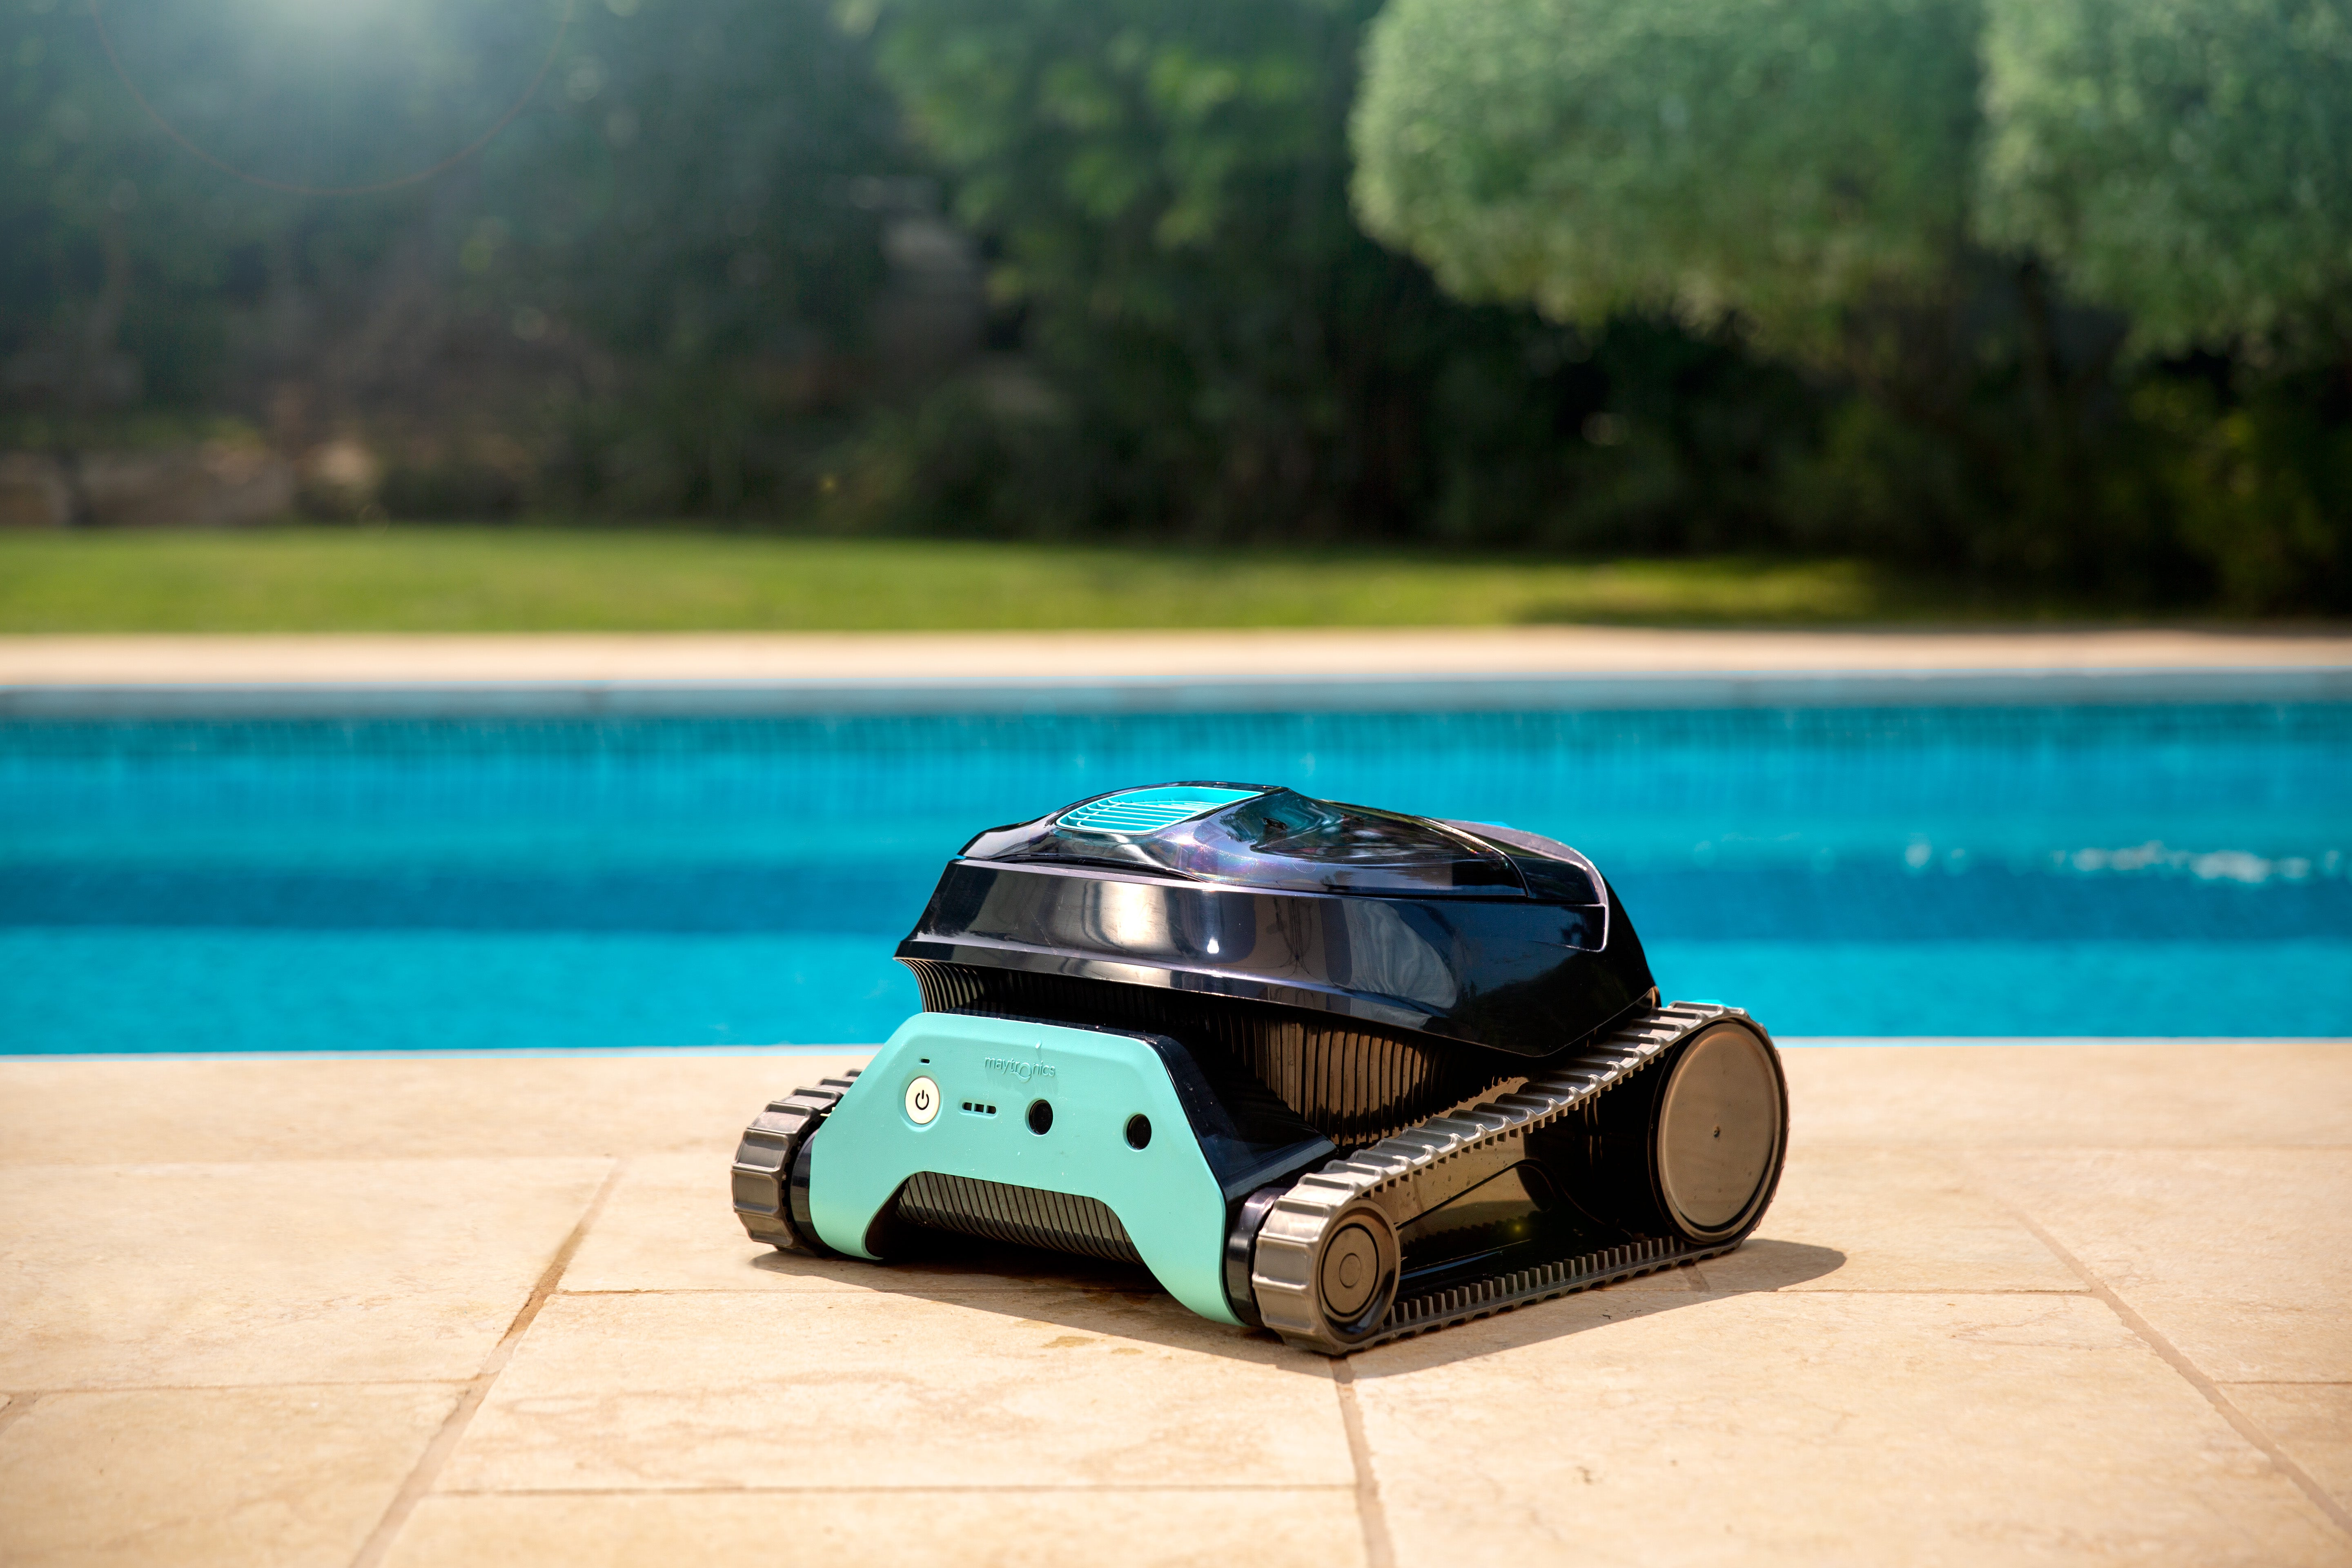 Robots limpiafondos a batería, lo mejor para limpiar piscinas | Leroy Merlin